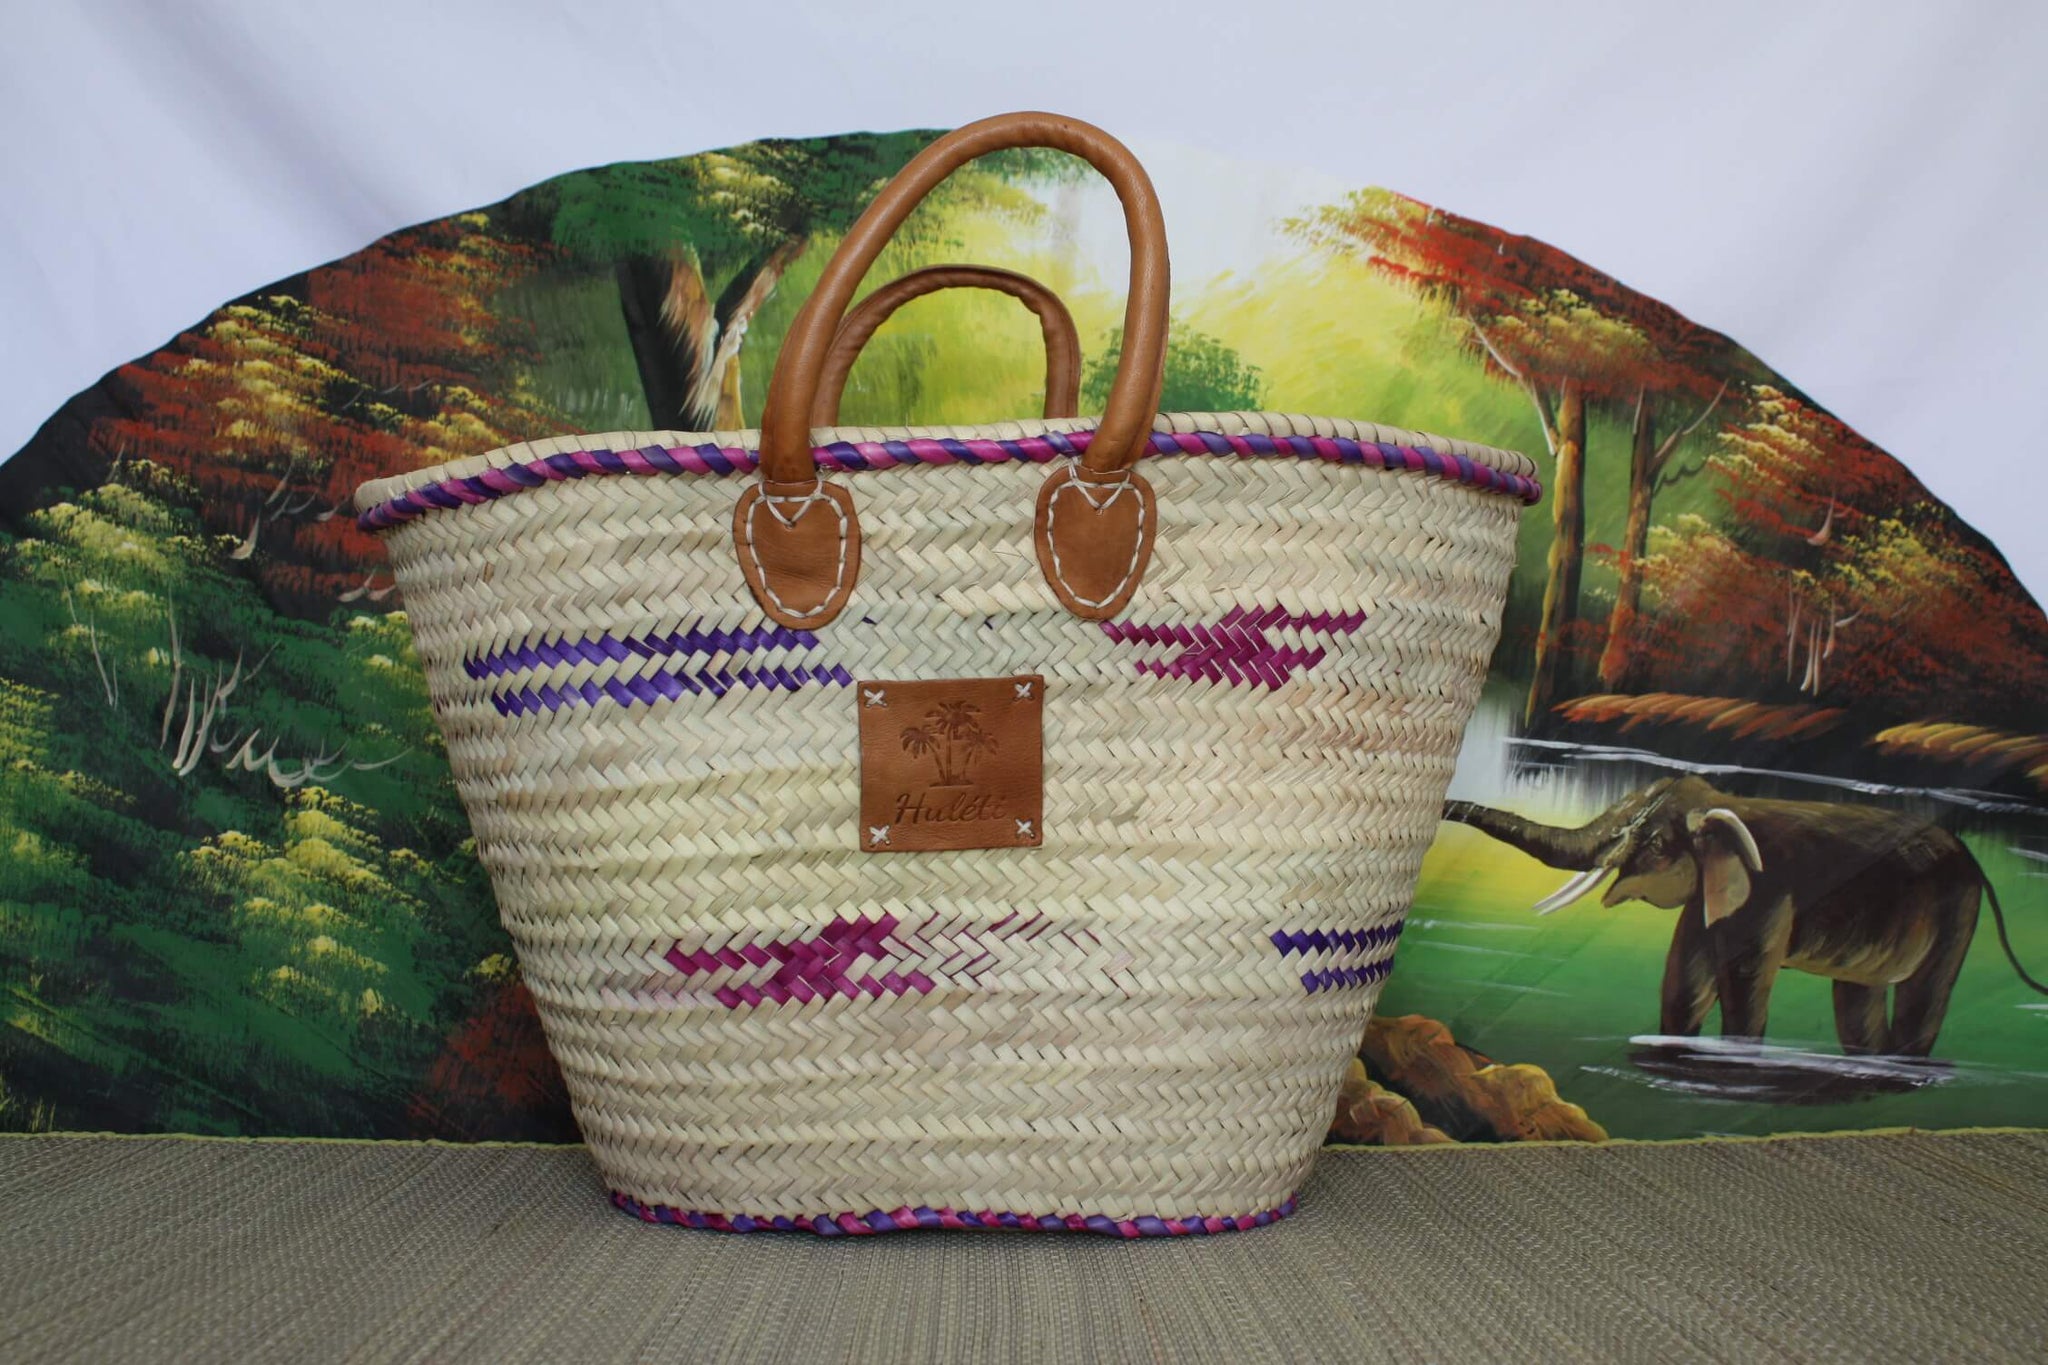 GROSSE Tasche verstärkte Griffe Leder – bunter Korb Einkaufstasche Couffin Märkte Einkaufen Strand Korbgeflecht Rattan natürliche Palme